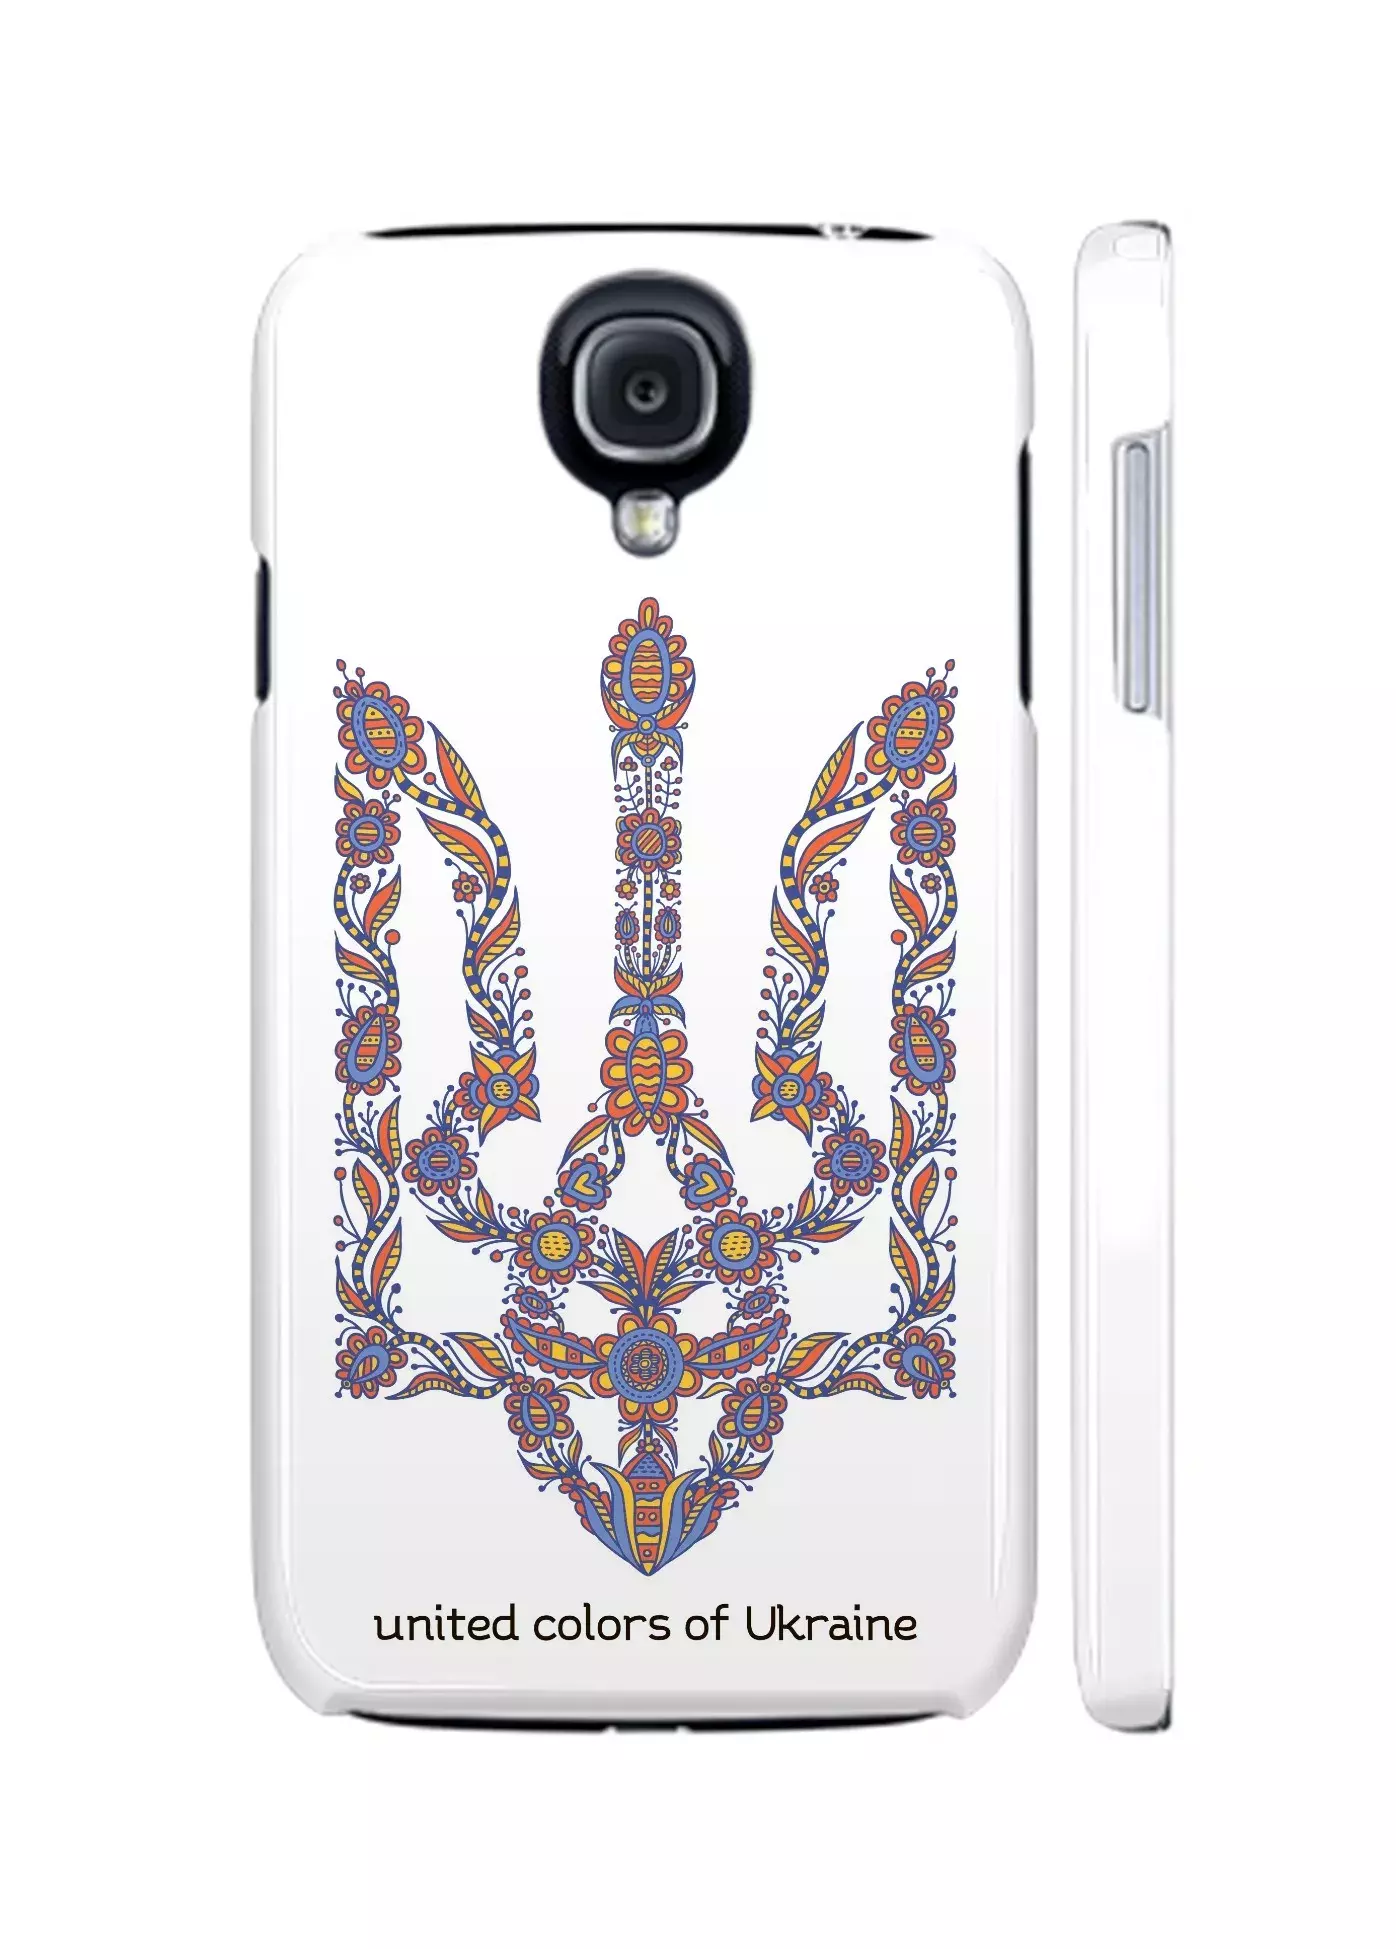 Купить чехол для Galaxy S4 Украина